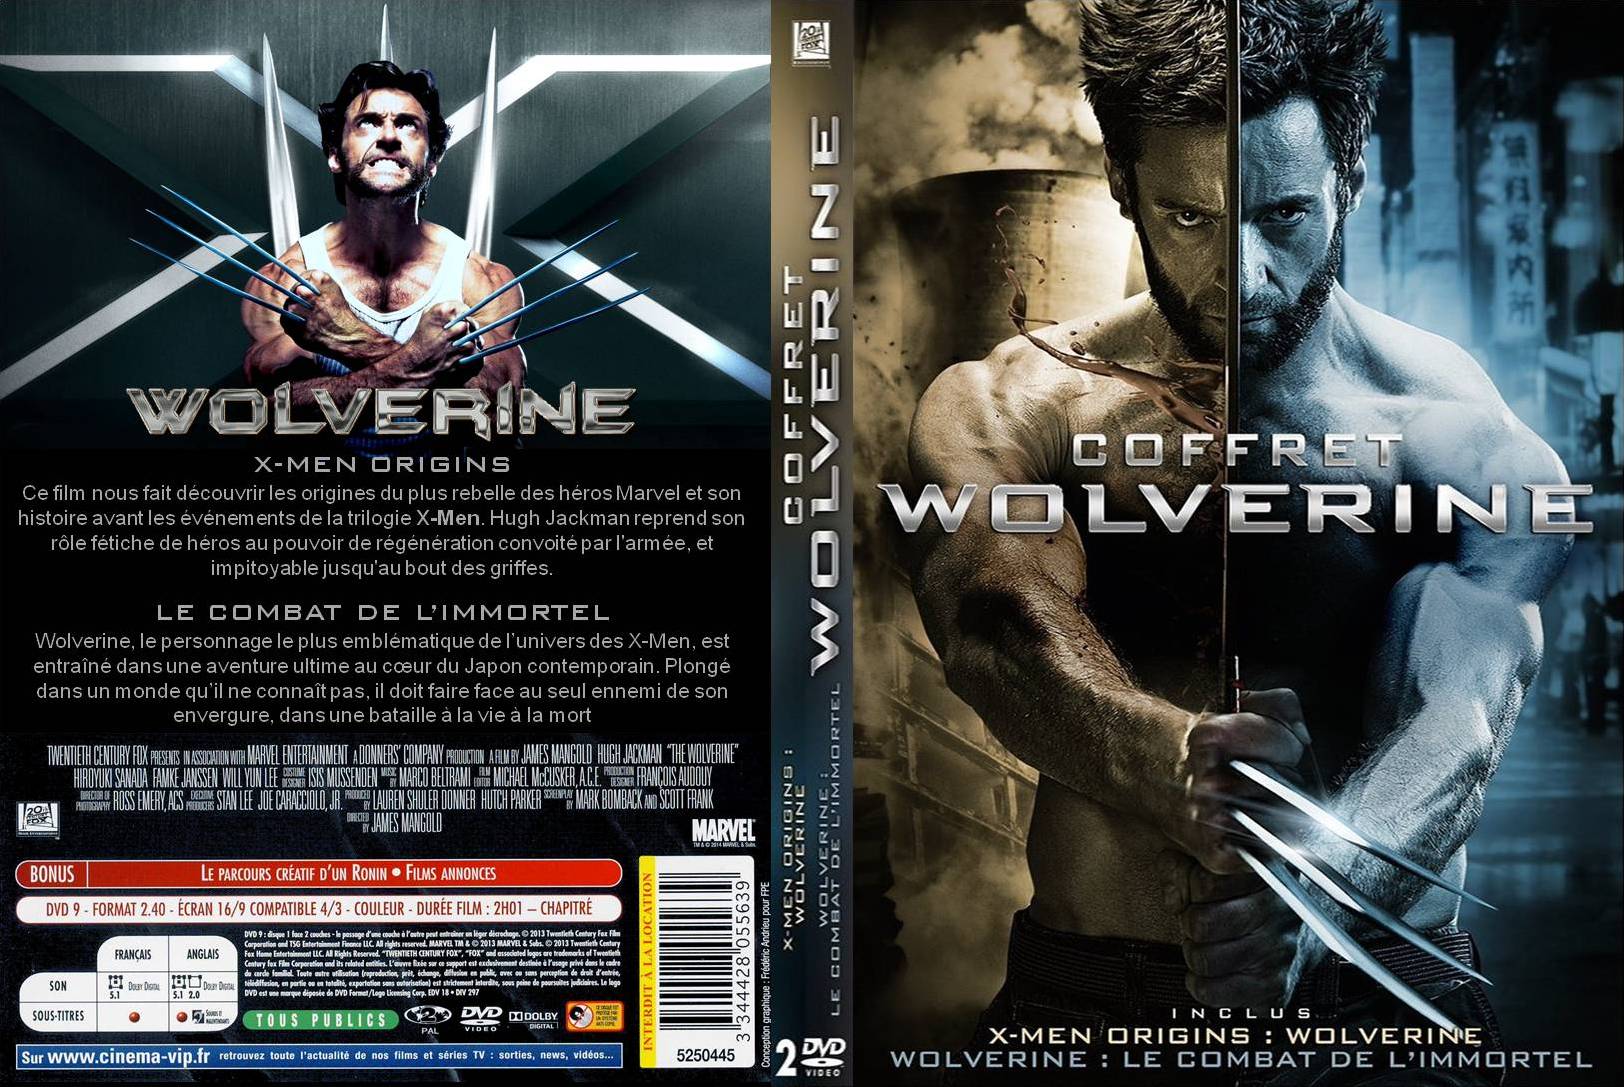 Jaquette DVD X-Men Origins Wolverine + Wolverine : le combat de l